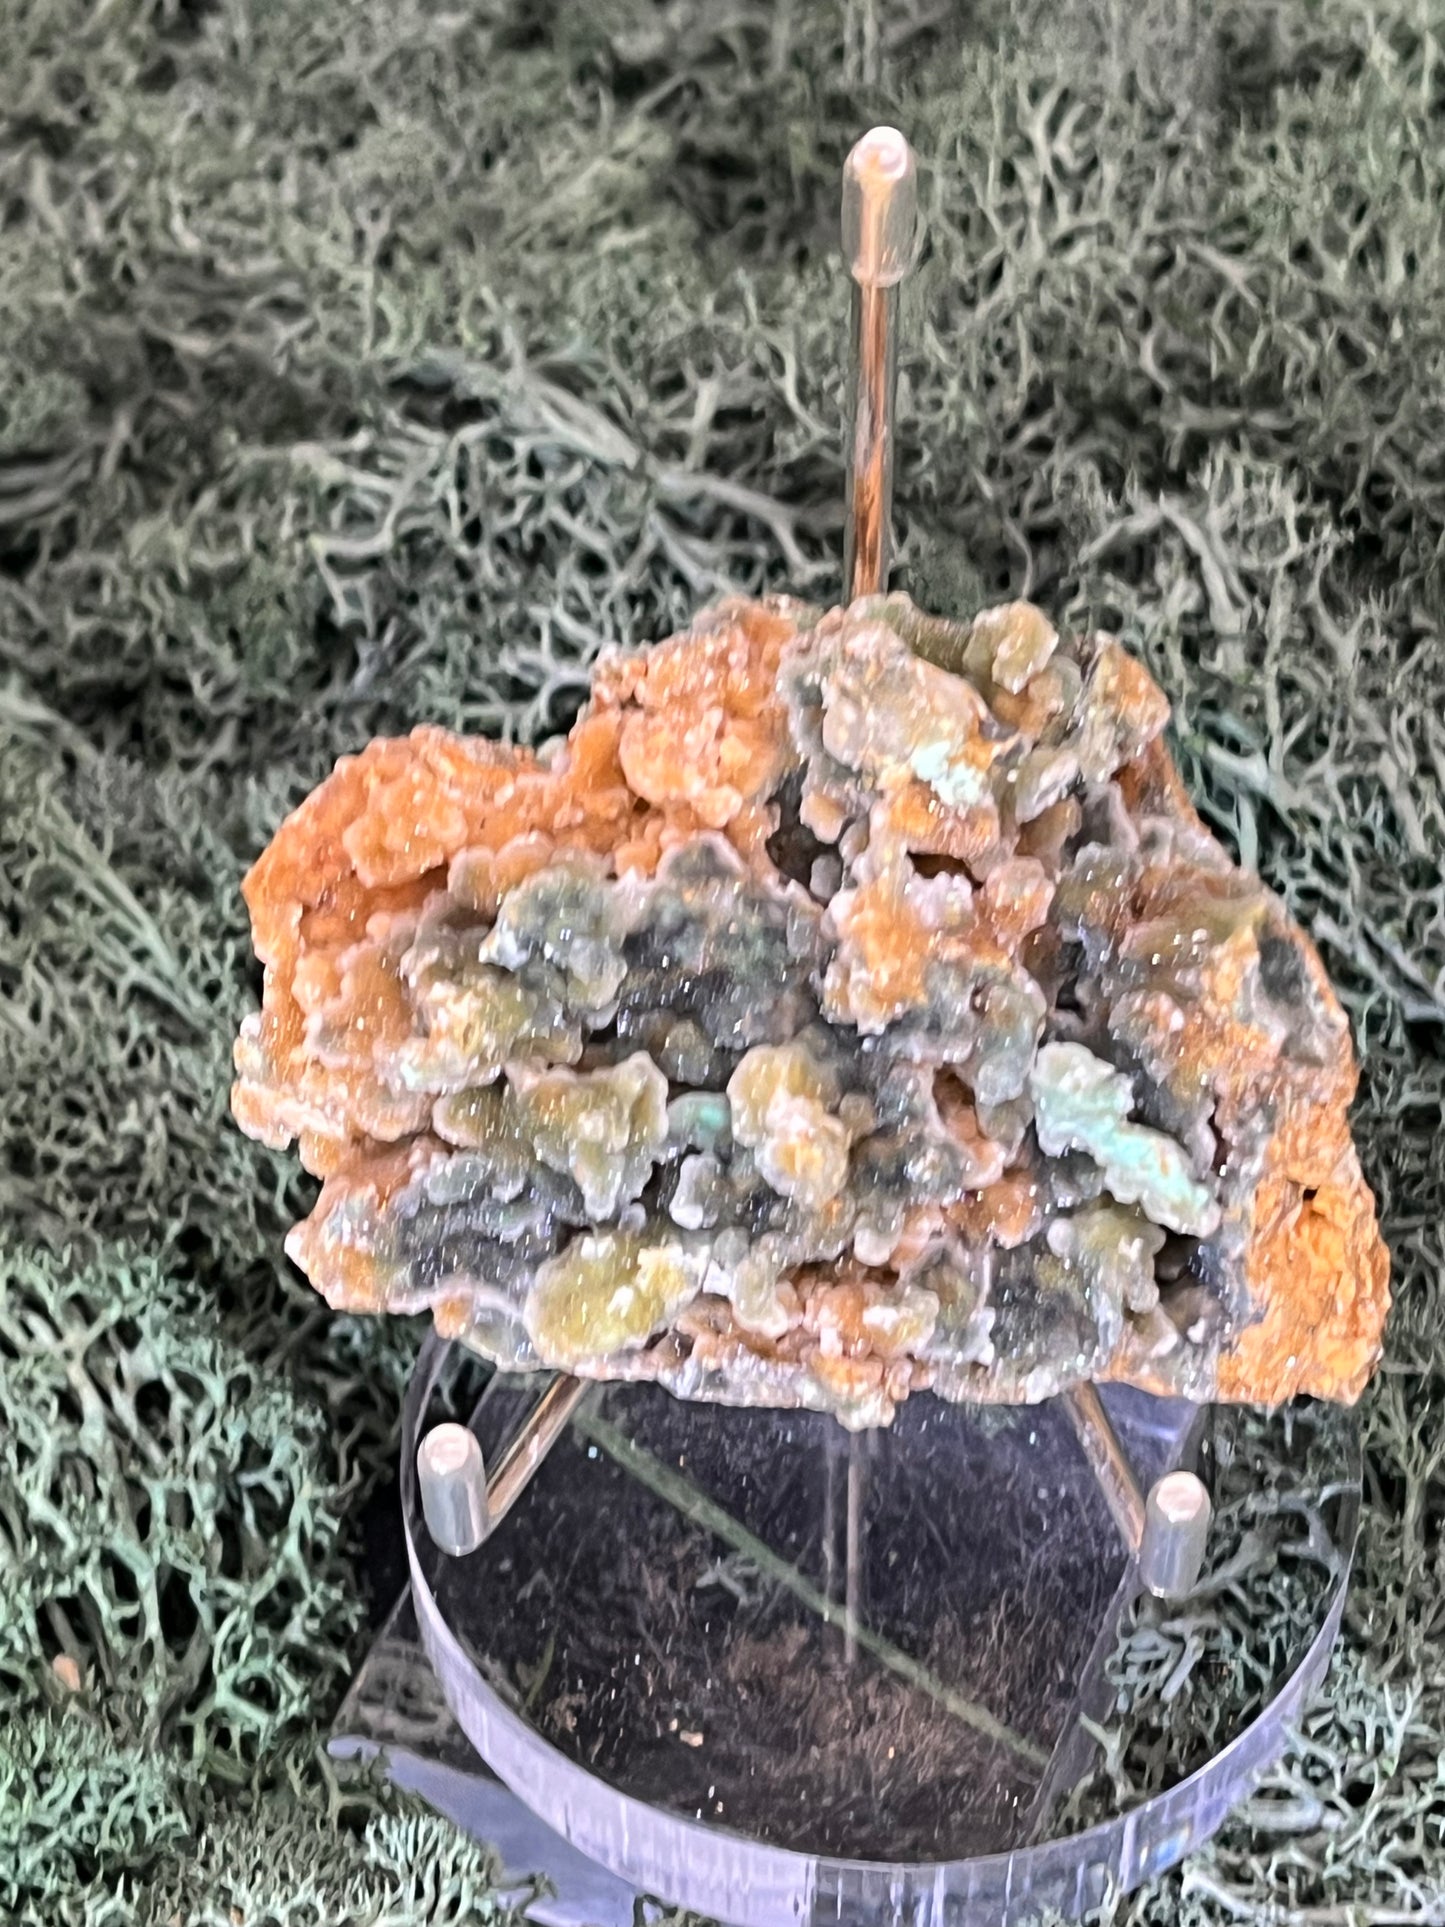 Smithsonit aus Indonesien (149g) - Stufe - glitzernde grüne Kristalle in Traubenform